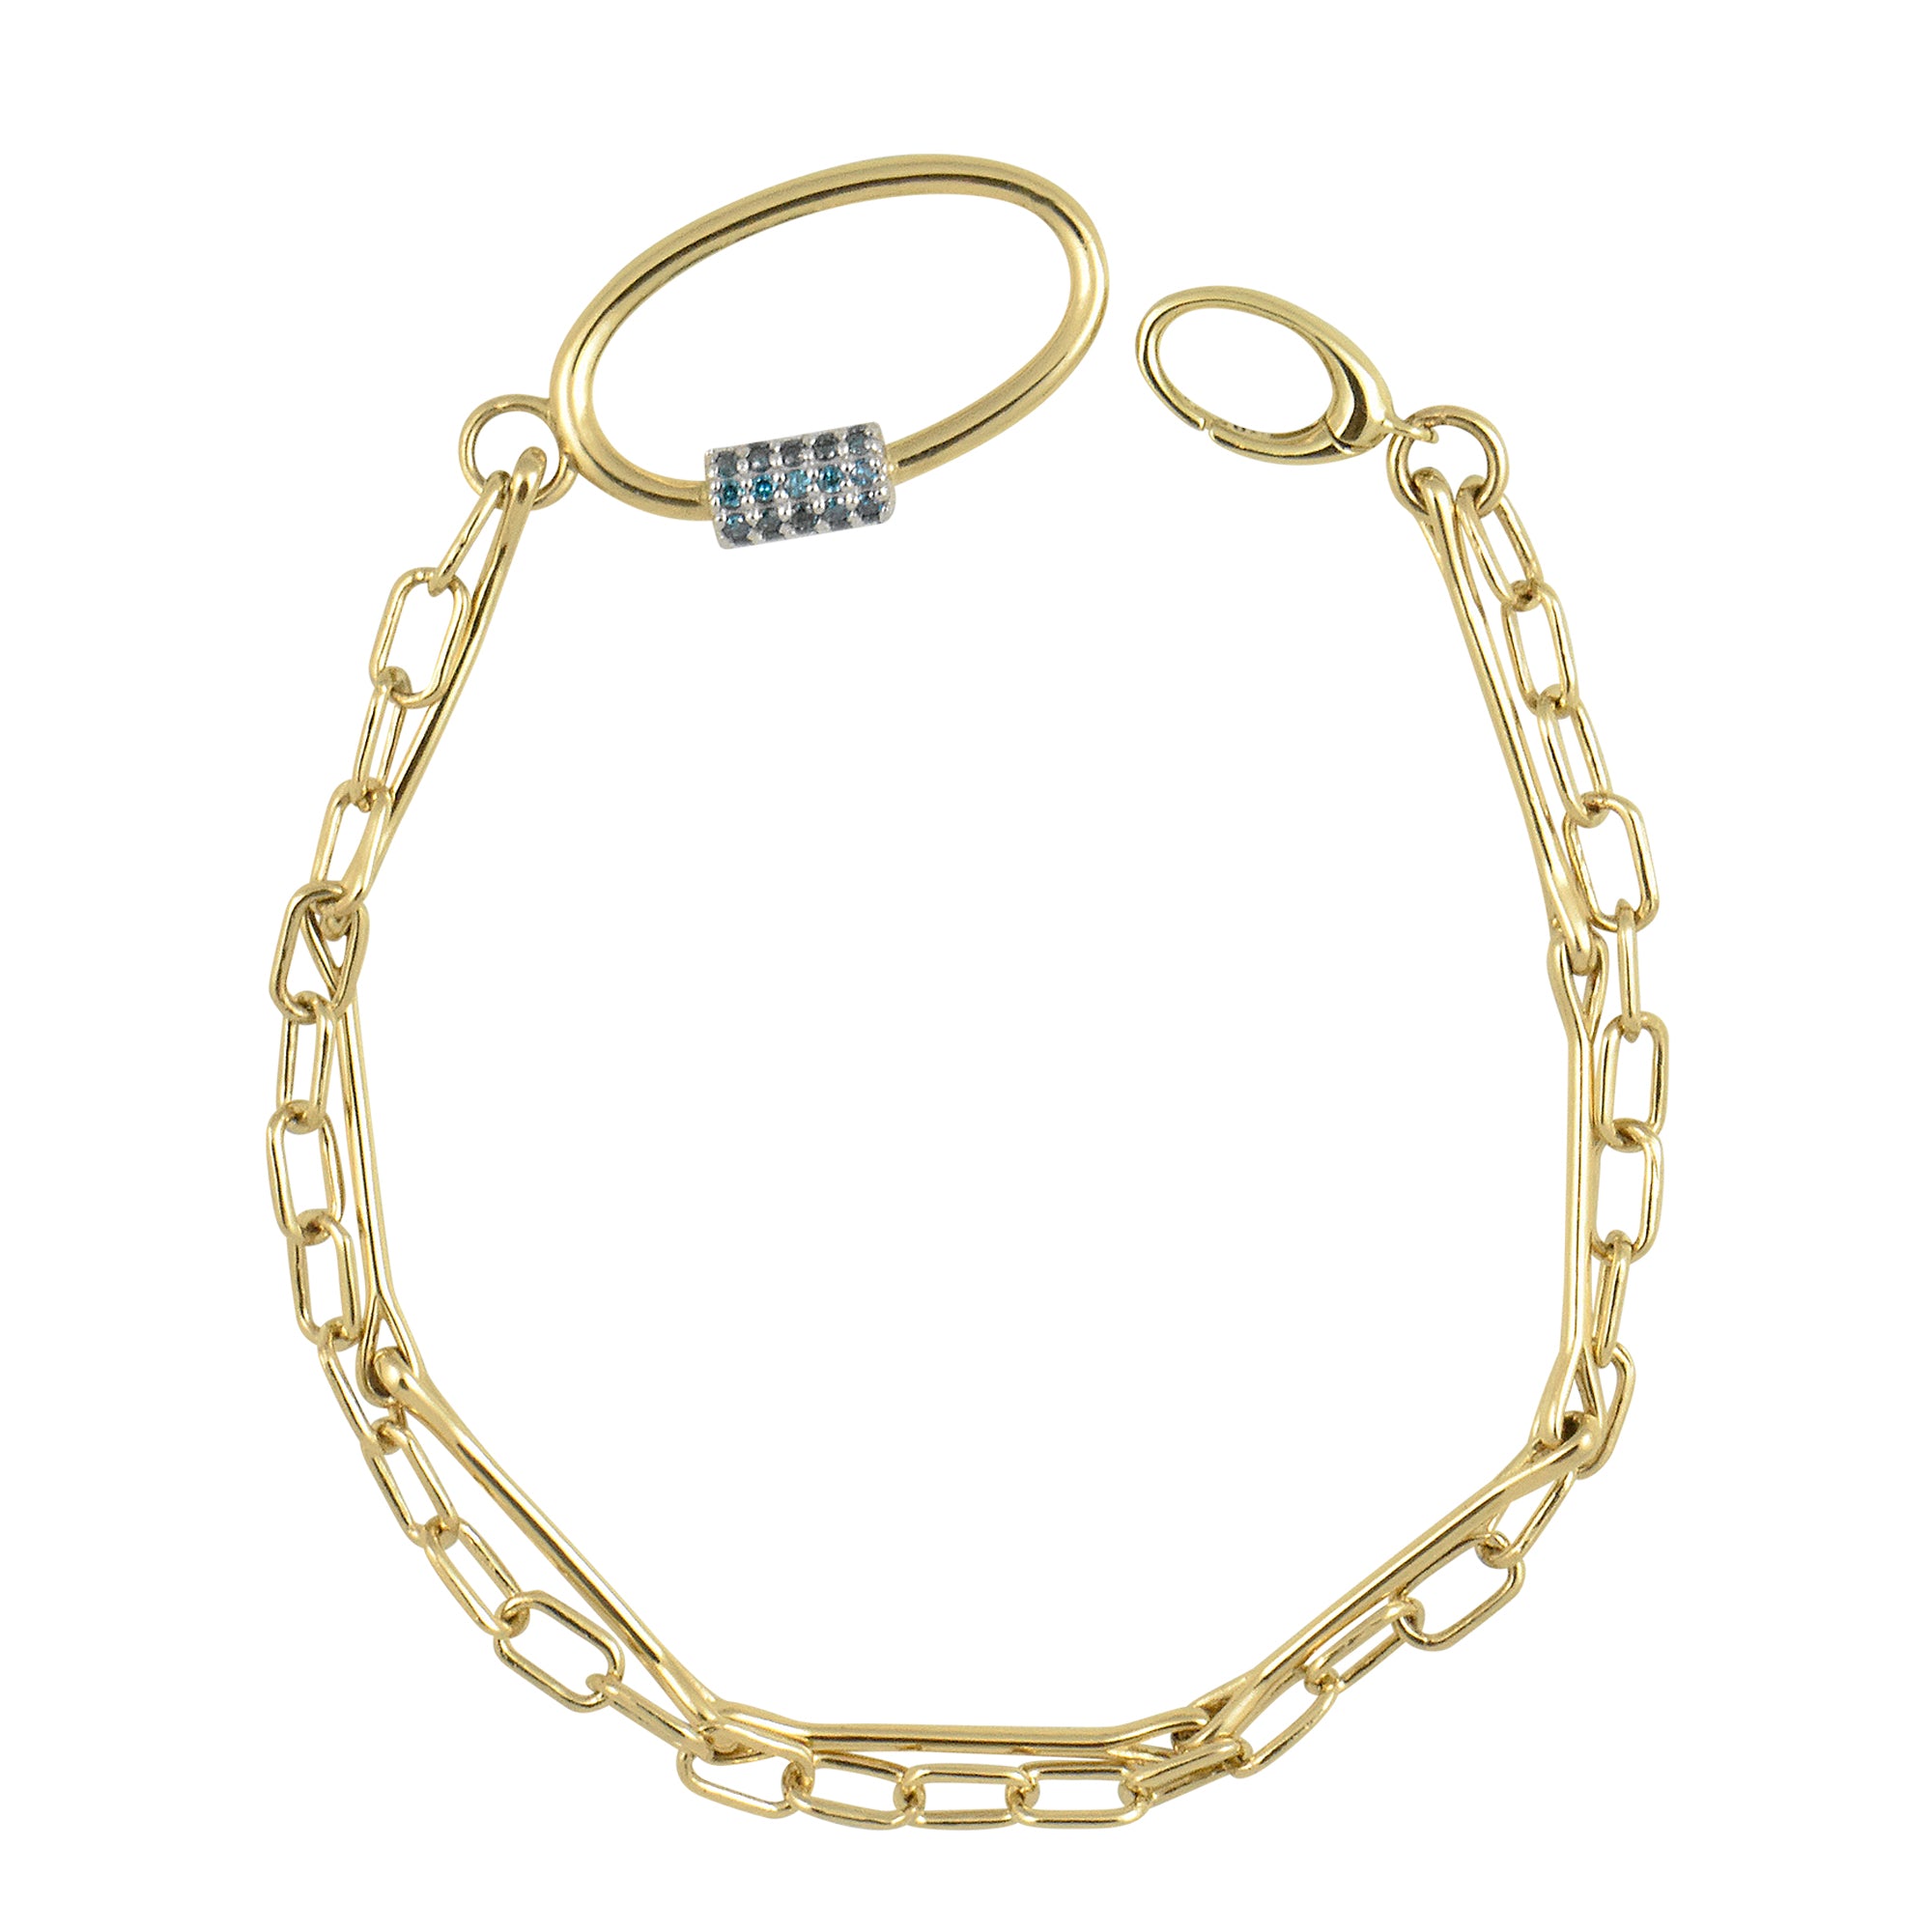 Titanium Steel Silver Color Bali Foxtail 21cm Chain Bracelet for Men Double  Link Chain Bracelets Male Jewelry : Amazon.ca: Clothing, Shoes & Accessories